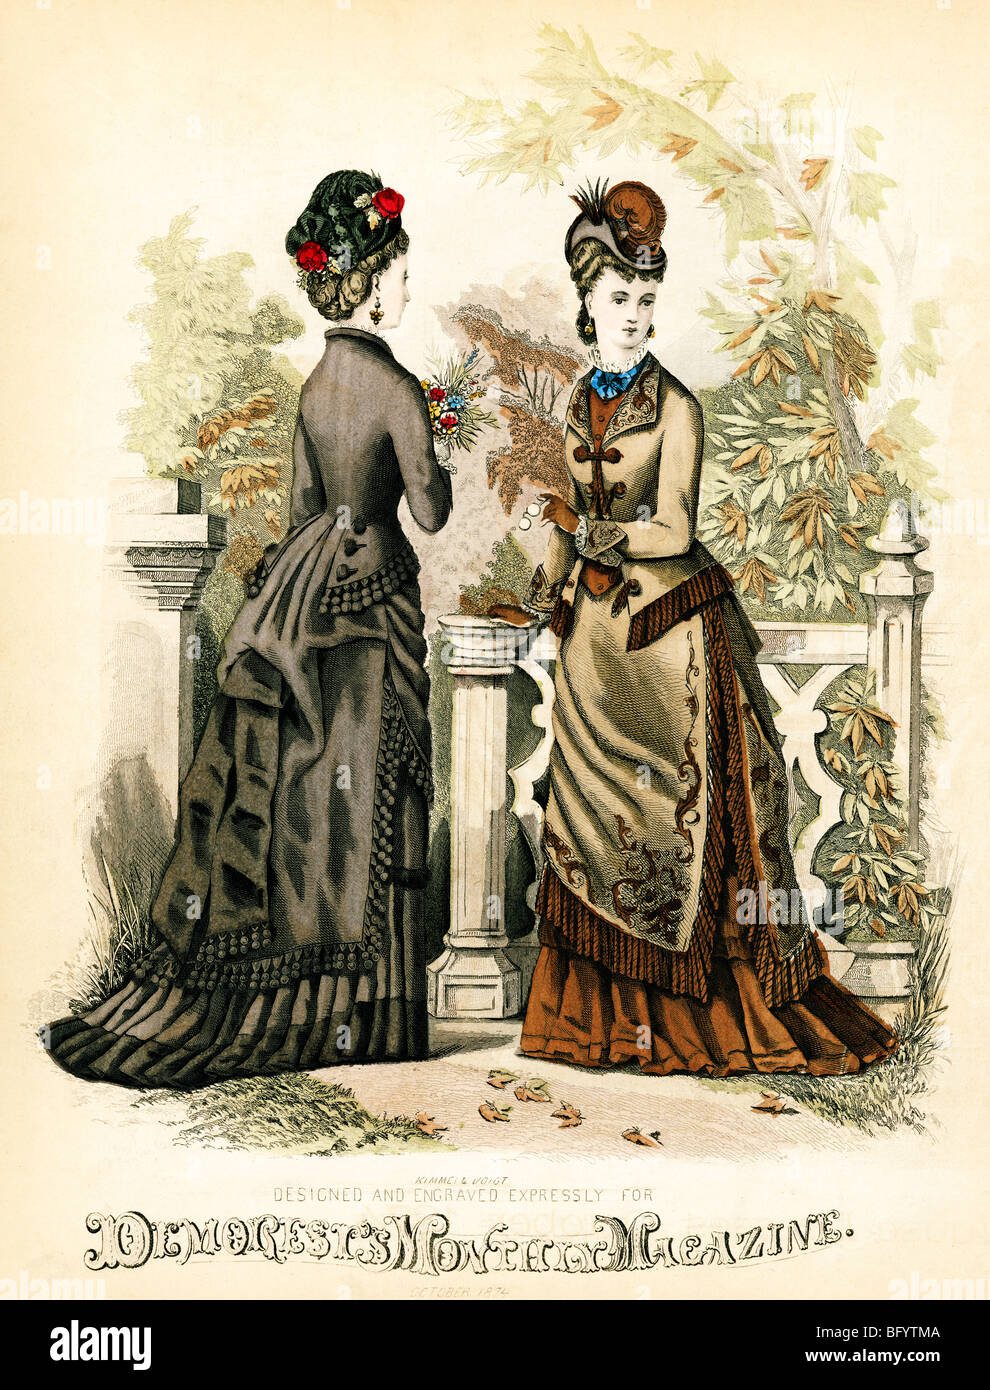 Demorests, octubre de 1874, el grabado de la revista mensual de señoras de moda americano famoso por patrones de costura Foto de stock